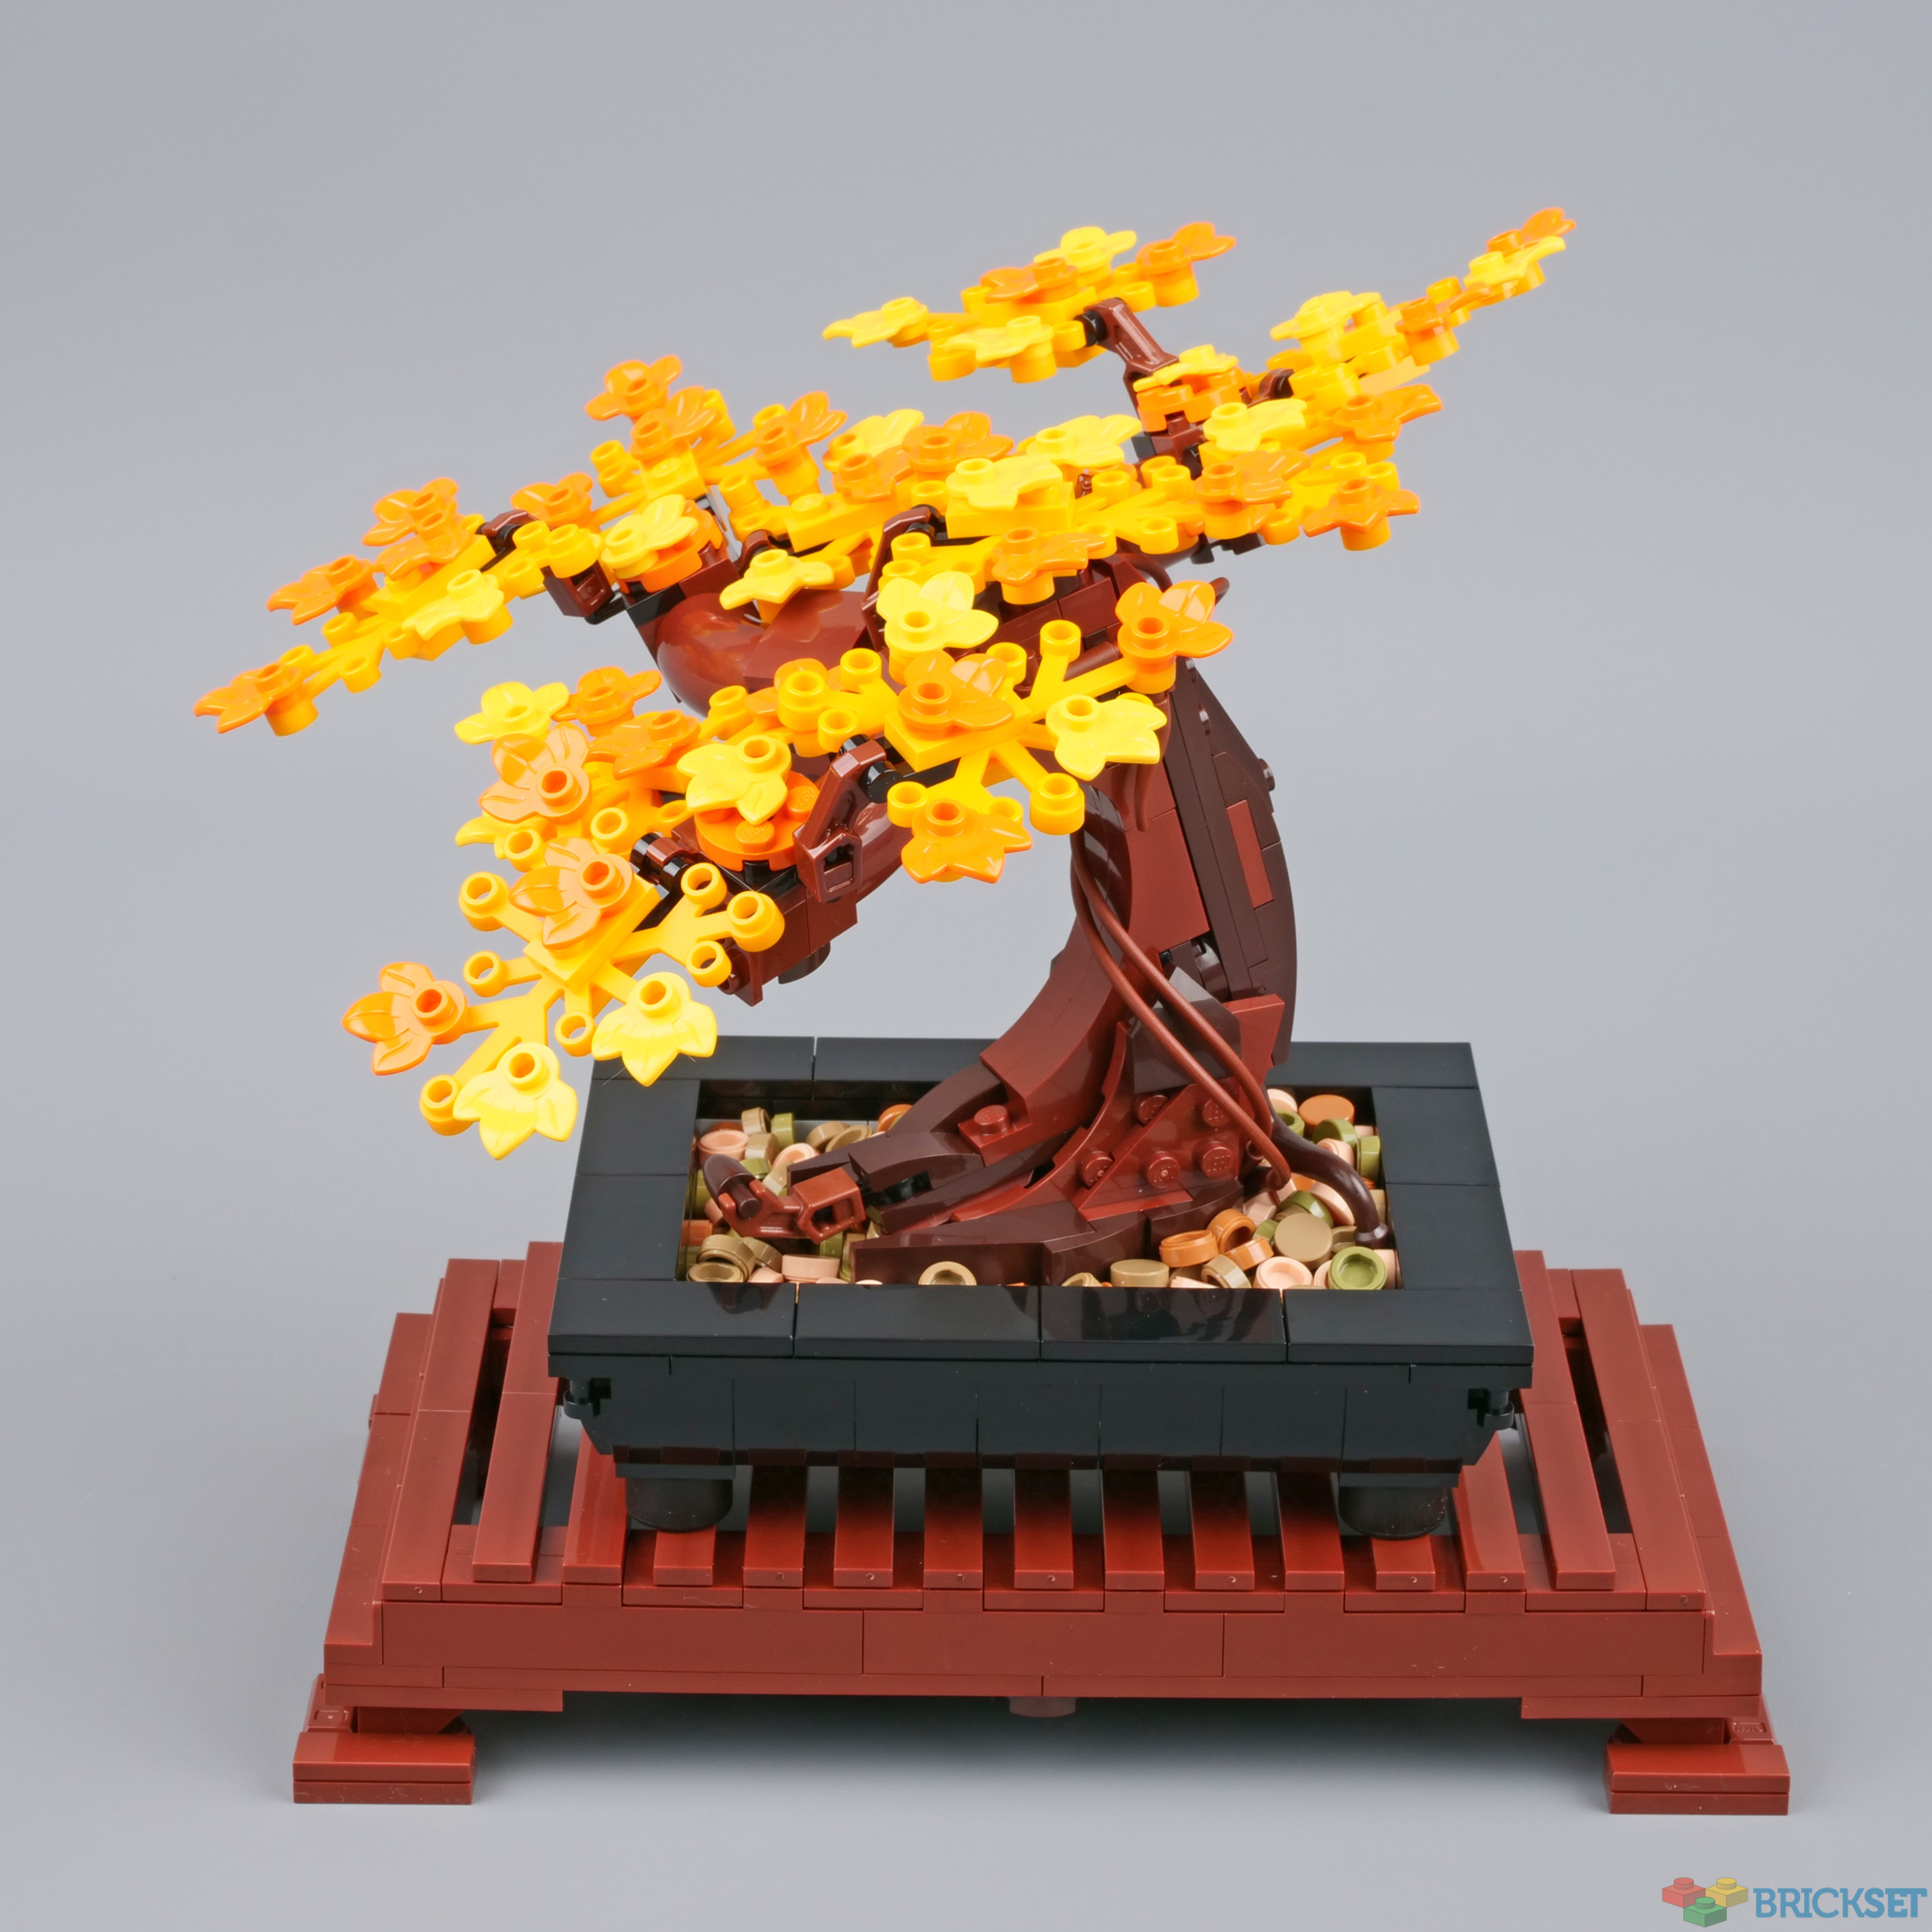 bonsai  Lego flower, Lego creations, Cool lego creations